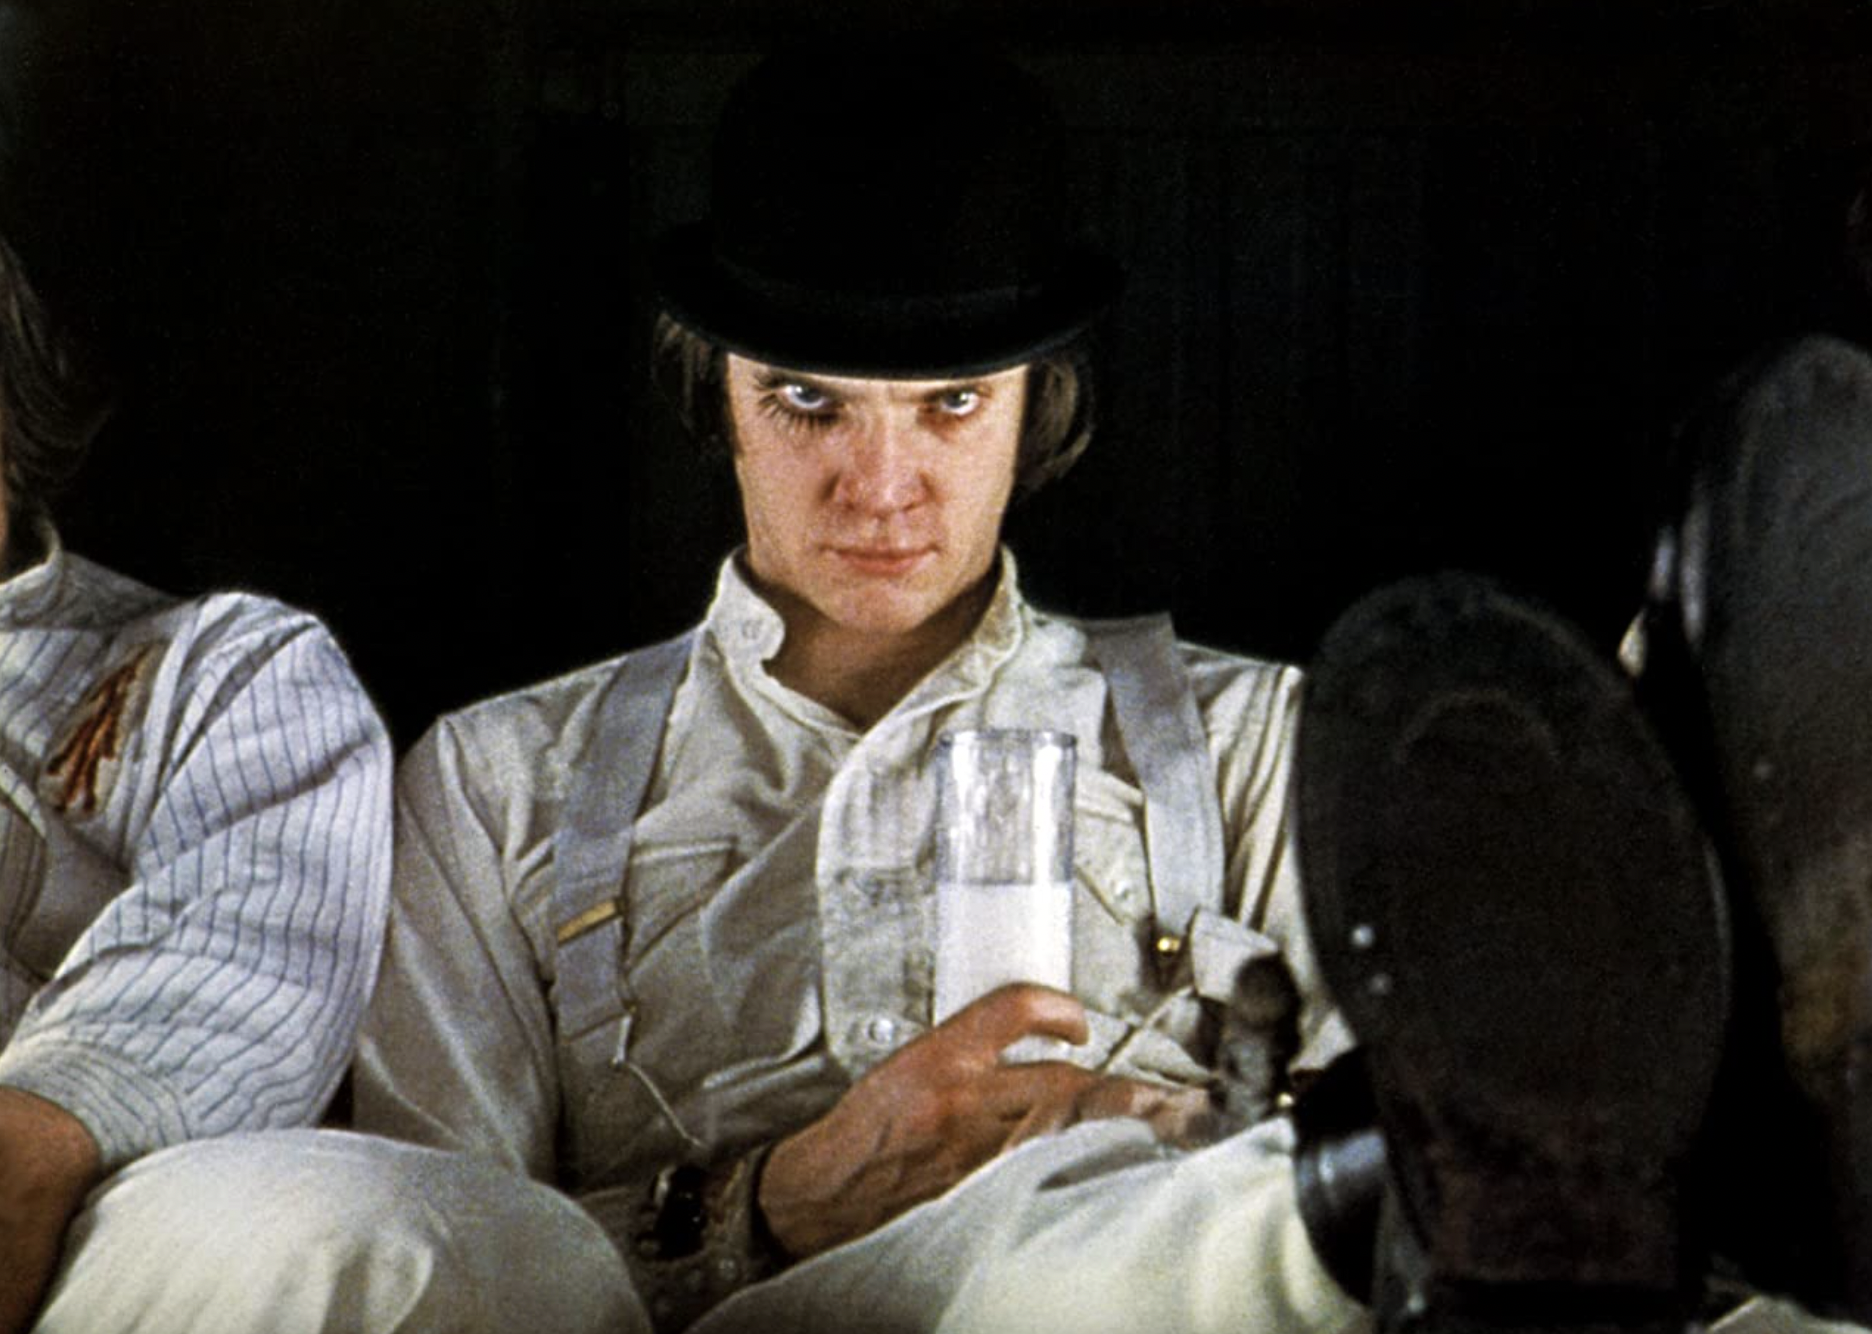 Malcolm McDowell in a scene from "A Clockwork Orange".